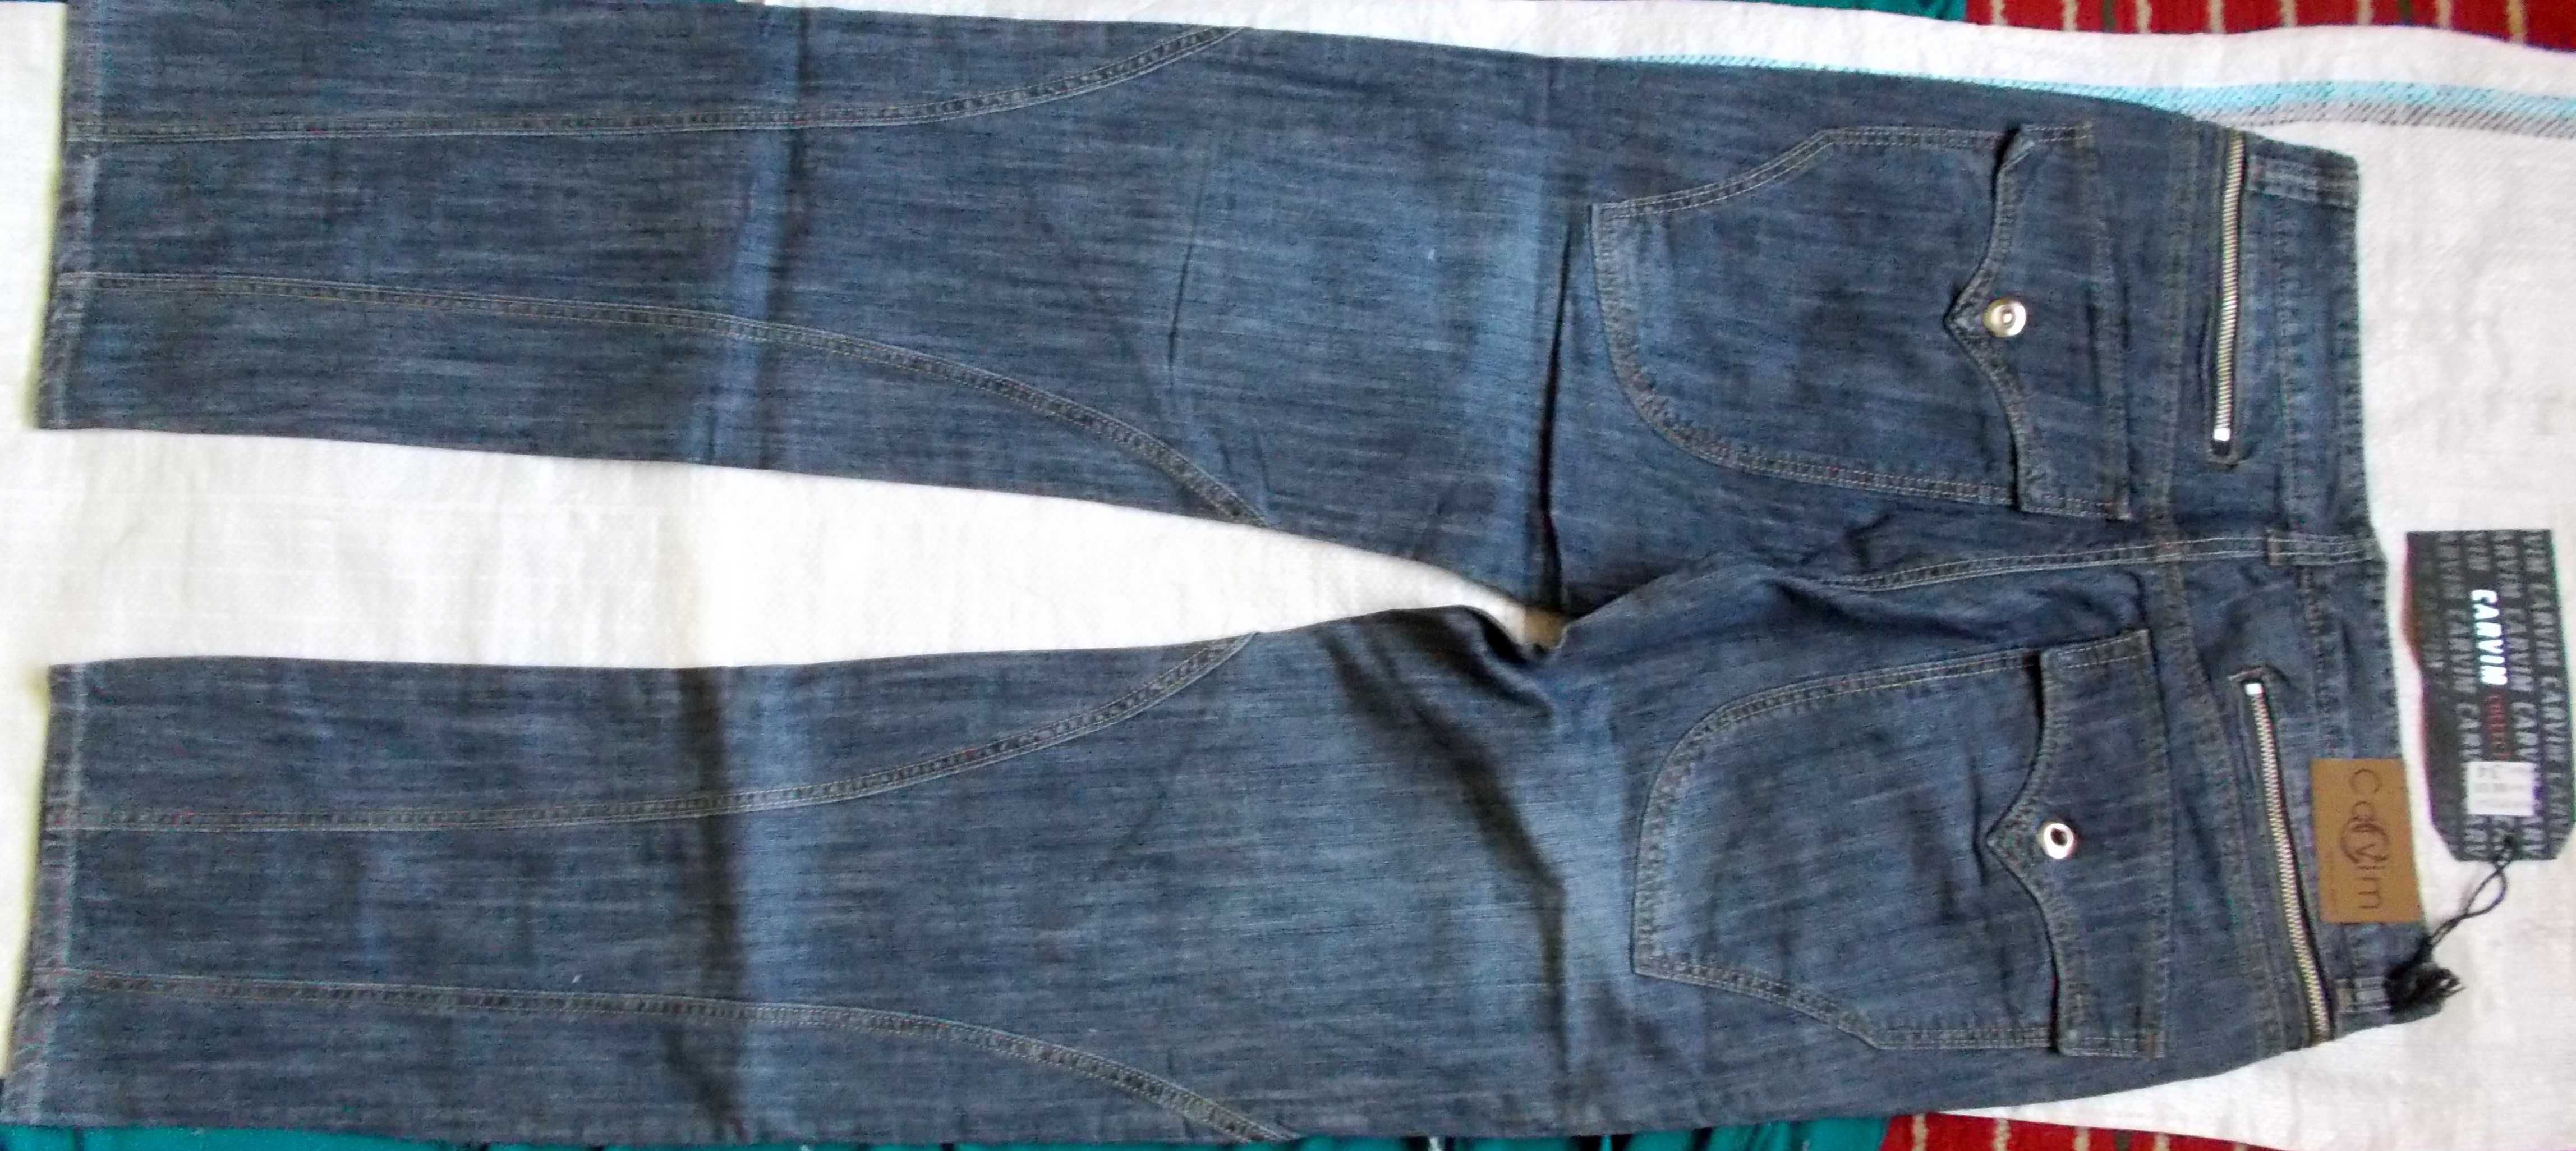 джинсы с множеством карманов,88 см.пояс.Новые